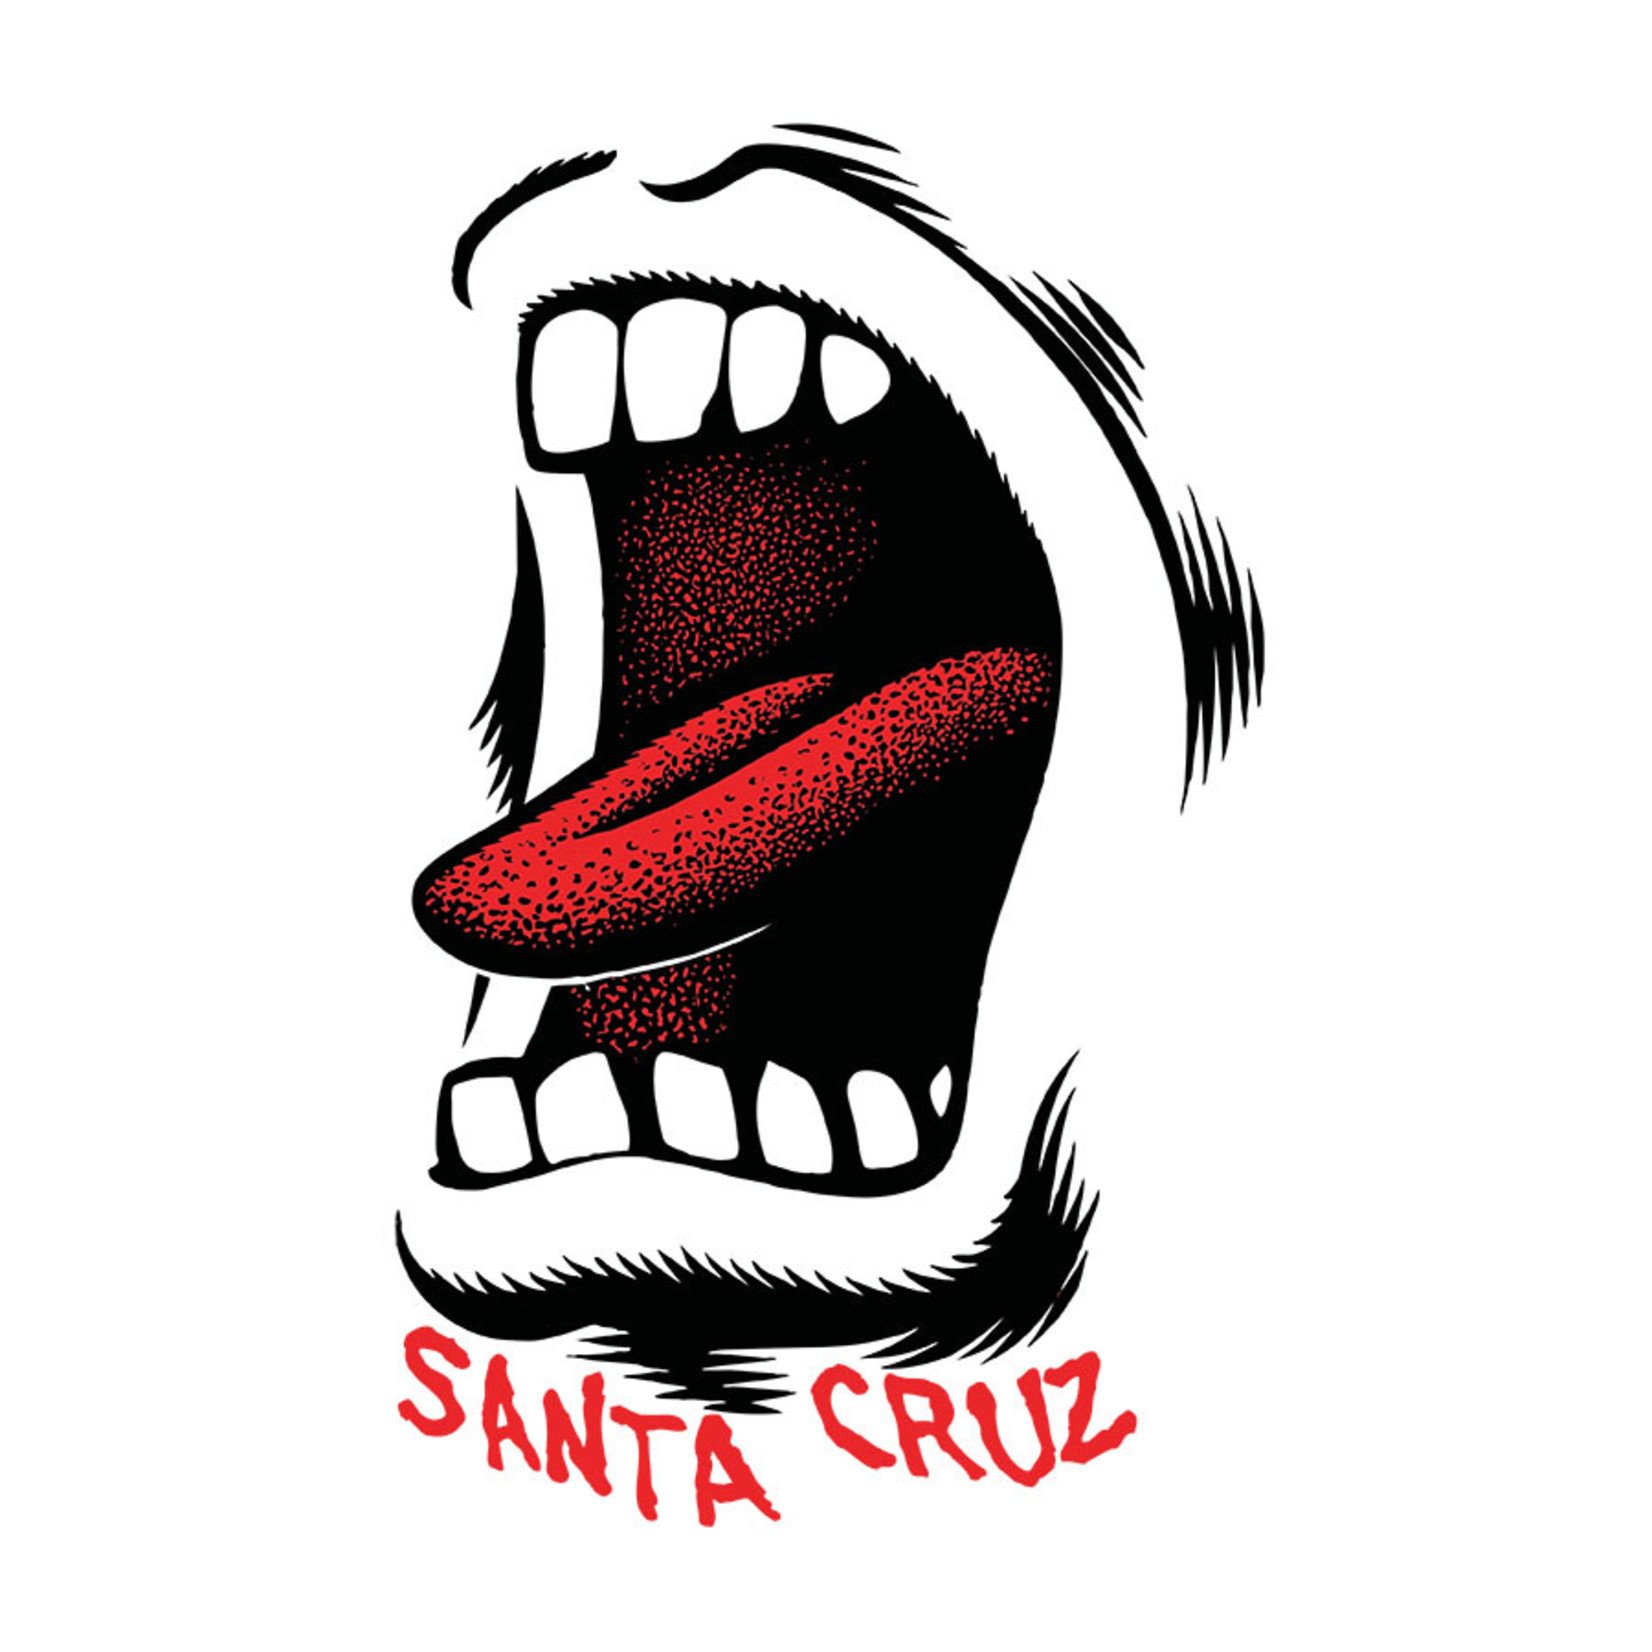 Santa Cruz Skateboards Santa Cruz Screaming Mouth Sticker 3.5 in x 2.25